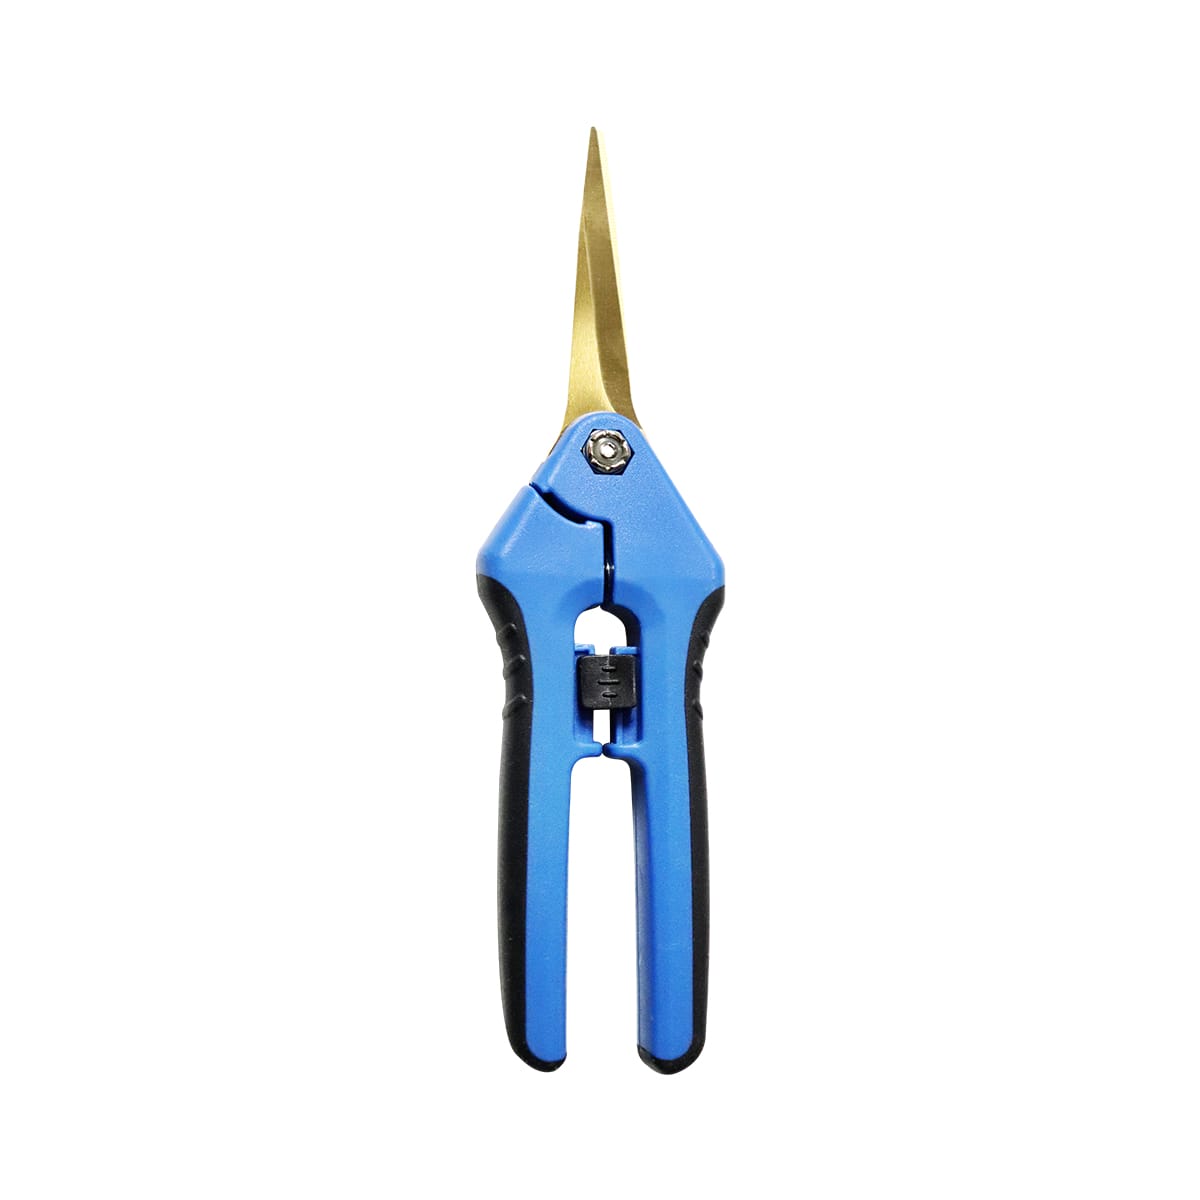 AgroMax Titanium Ambidextrous Pruning Scissors